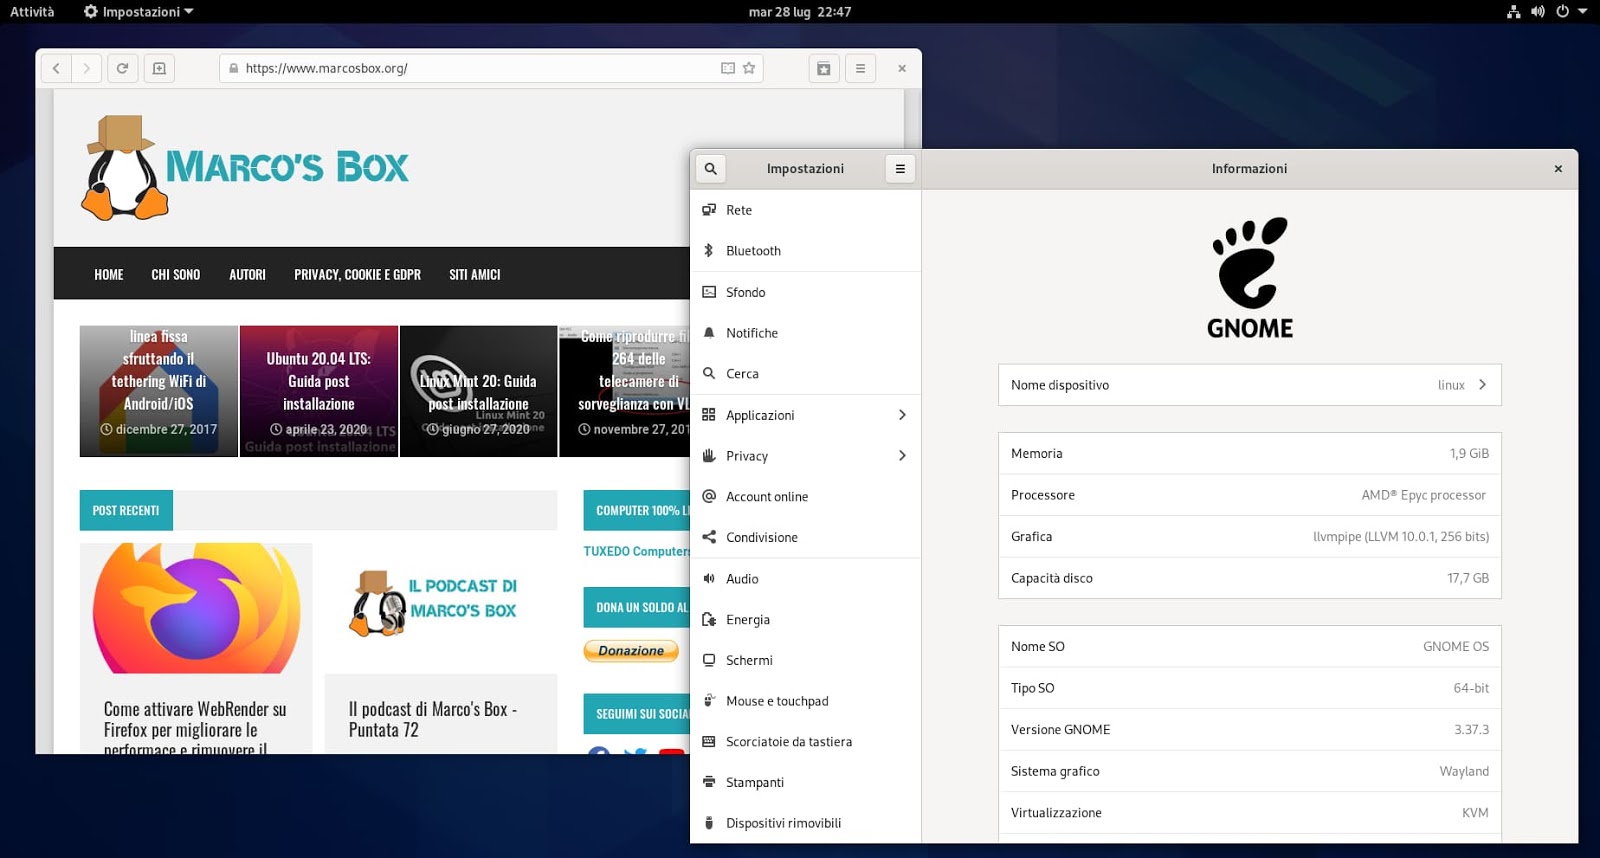 Le immagini di GNOME OS disponibili per i test